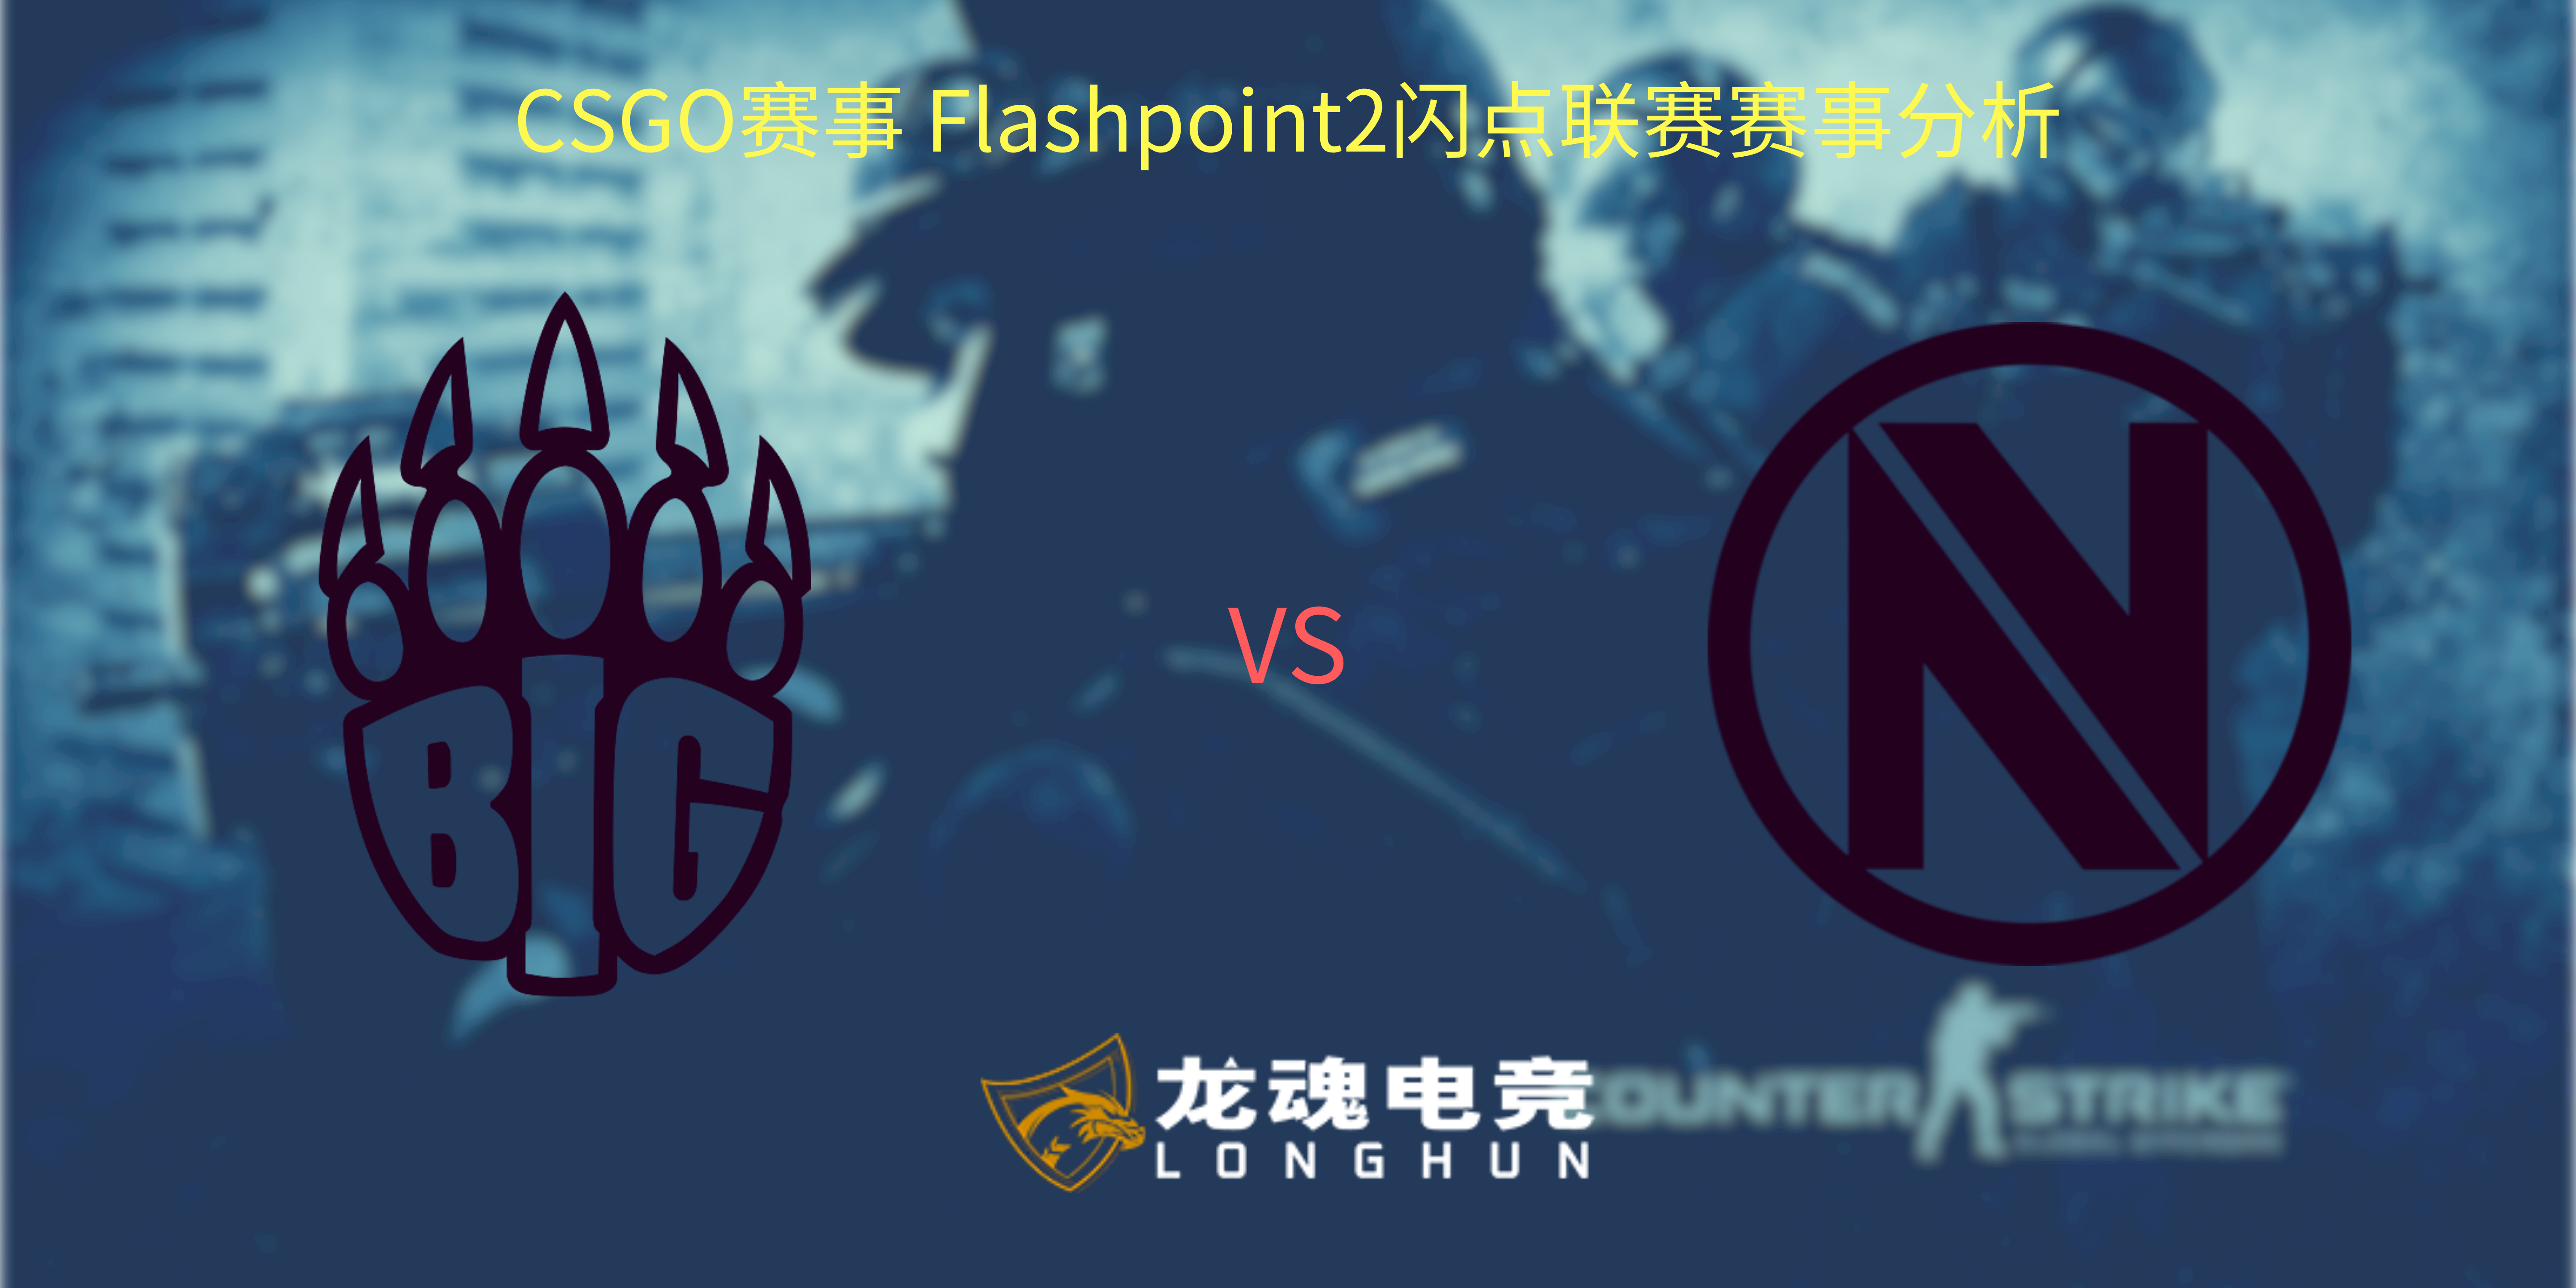  龙魂电竞-CSGO赛事Flashpoint 2闪点联赛赛事分析 BIG vs ENVY | 龙魂电竞